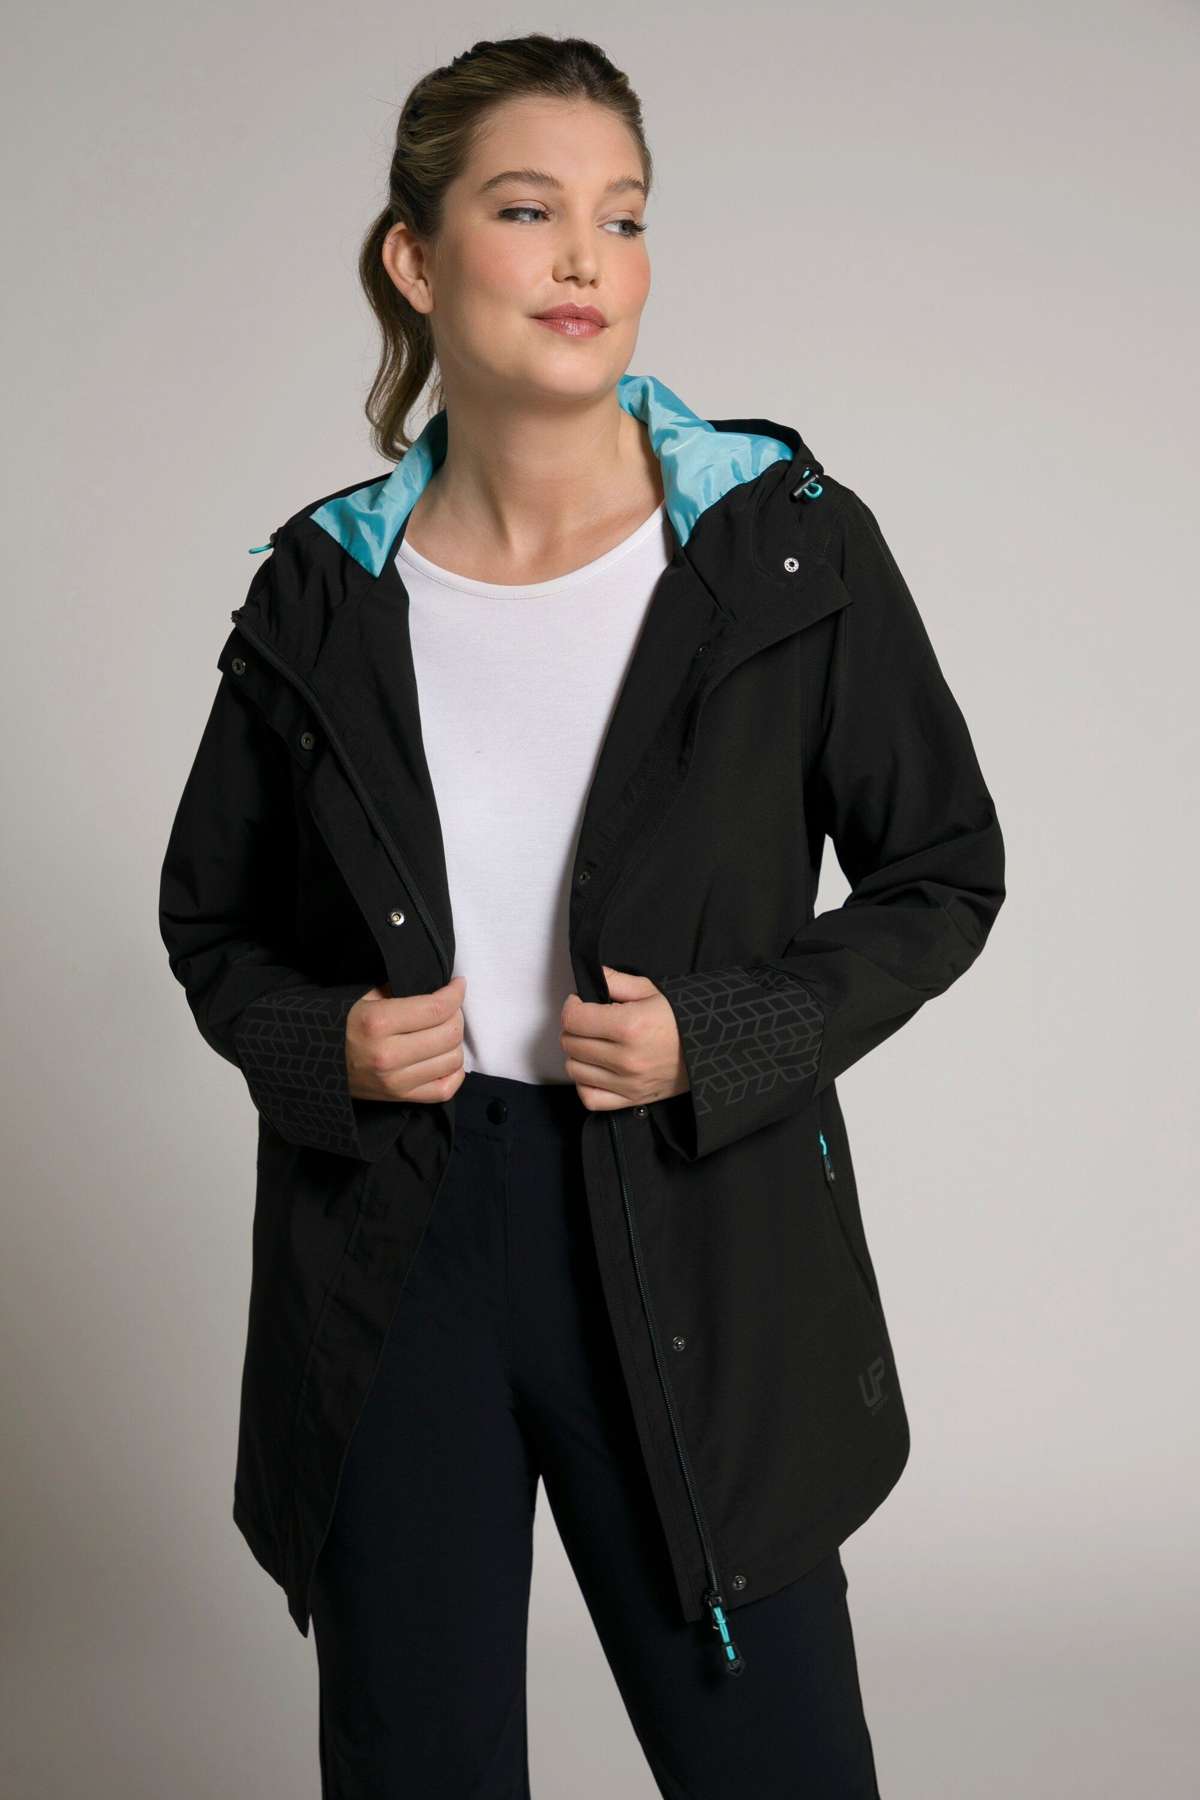 Функциональная куртка, функциональная куртка, водонепроницаемые отражатели.